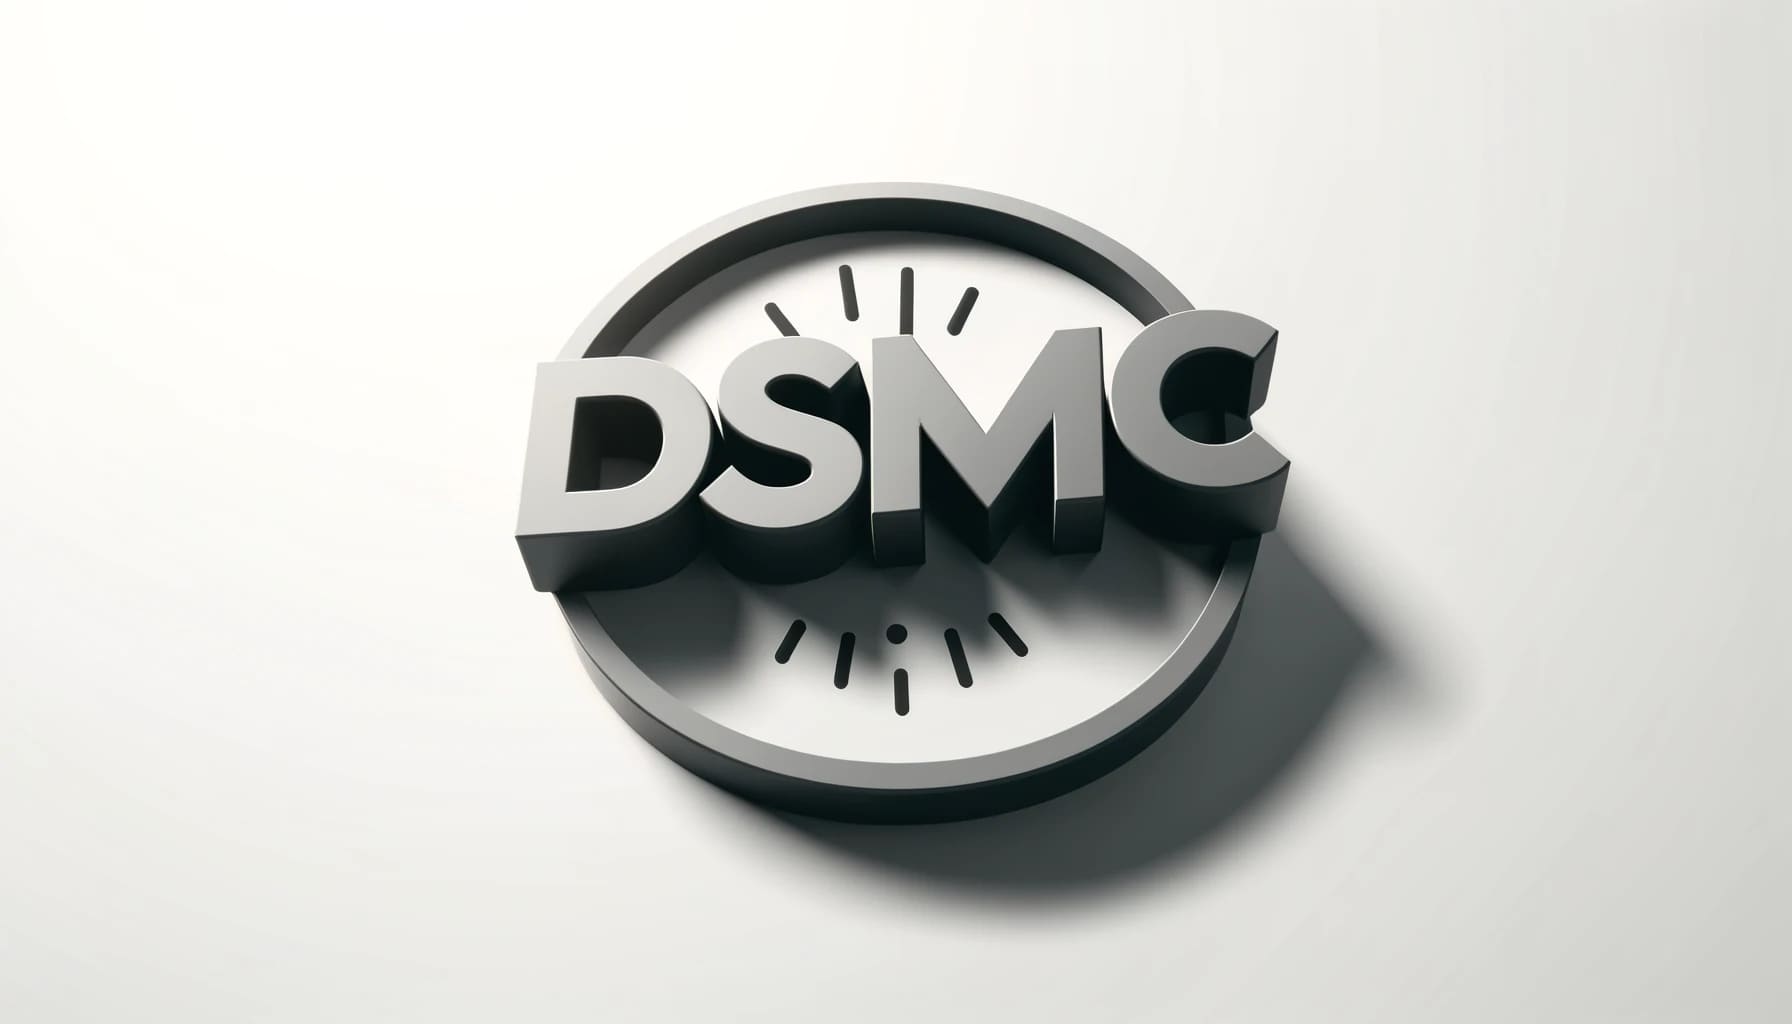 DSMC